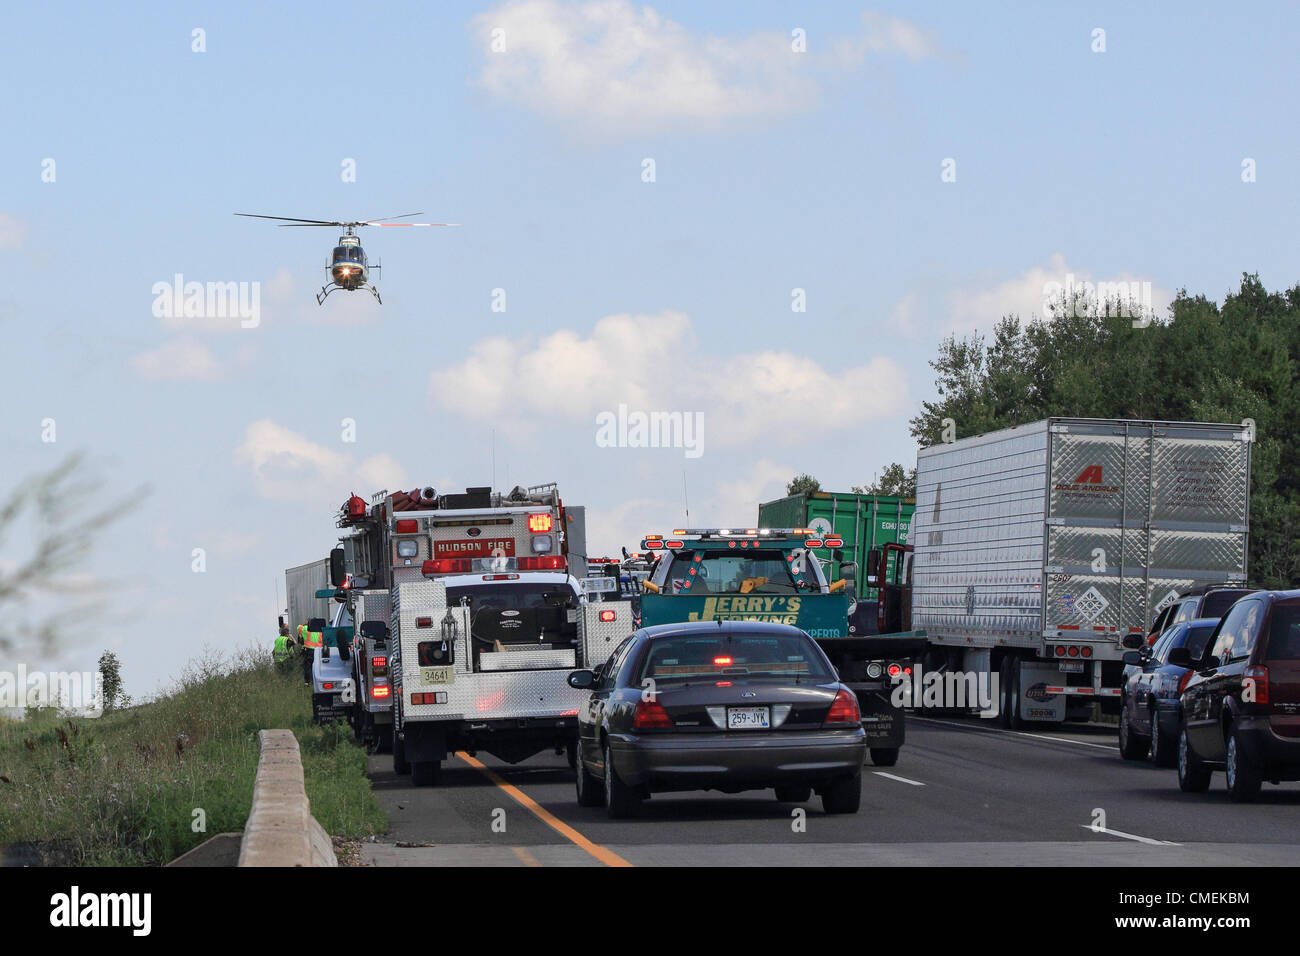 Lunes, 30 de julio, 2012 -- un helicóptero LifeFlight transporta a una víctima de la escena de un accidente mortal en la Interestatal 94 en Hudson, Wisconsin, Estados Unidos. El accidente ocurrió aproximadamente a la 1:30 de la tarde del lunes cuando un vehículo utilitario deportivo con seis pasajeros se estrelló en la parte trasera de una plataforma semi-remolque. Al menos una persona murió en el accidente. Foto de stock